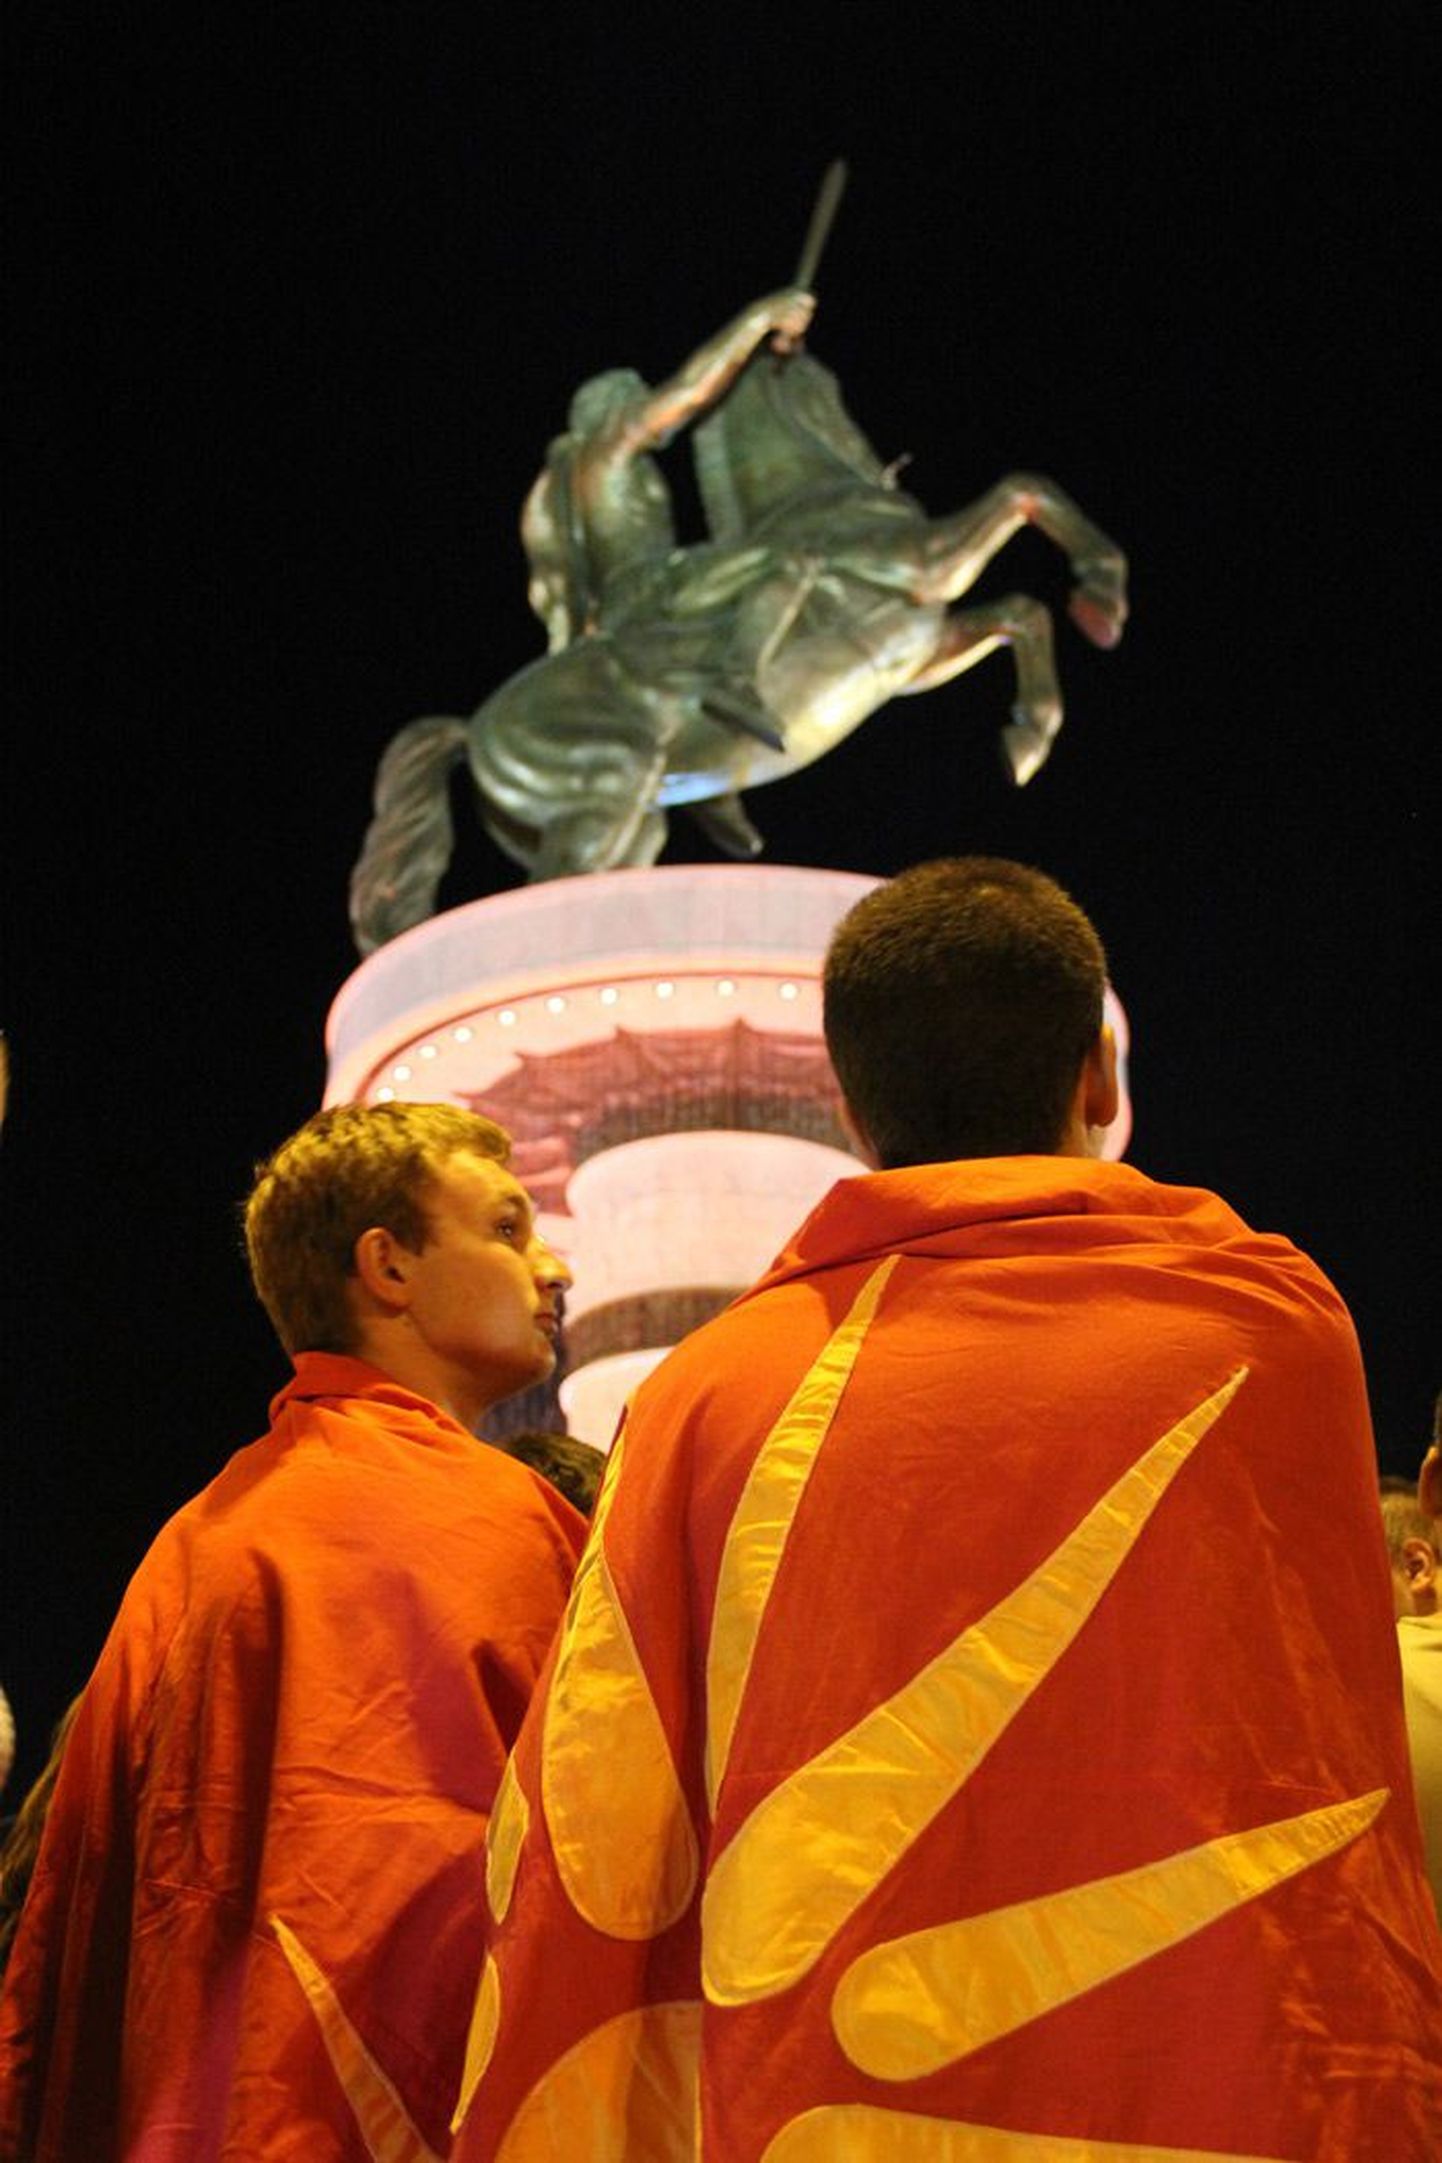 Oma hiiglasliku pronkskäe üle Skopje sirutanud Aleksander Suure 
22 meetri kõrgune monument on saanud Makedoonia rahvusluse sümboliks. Kriitikute sõnul juhib valitsus sel moel aga tähelepanu kõrvale tegelikelt probleemidelt.